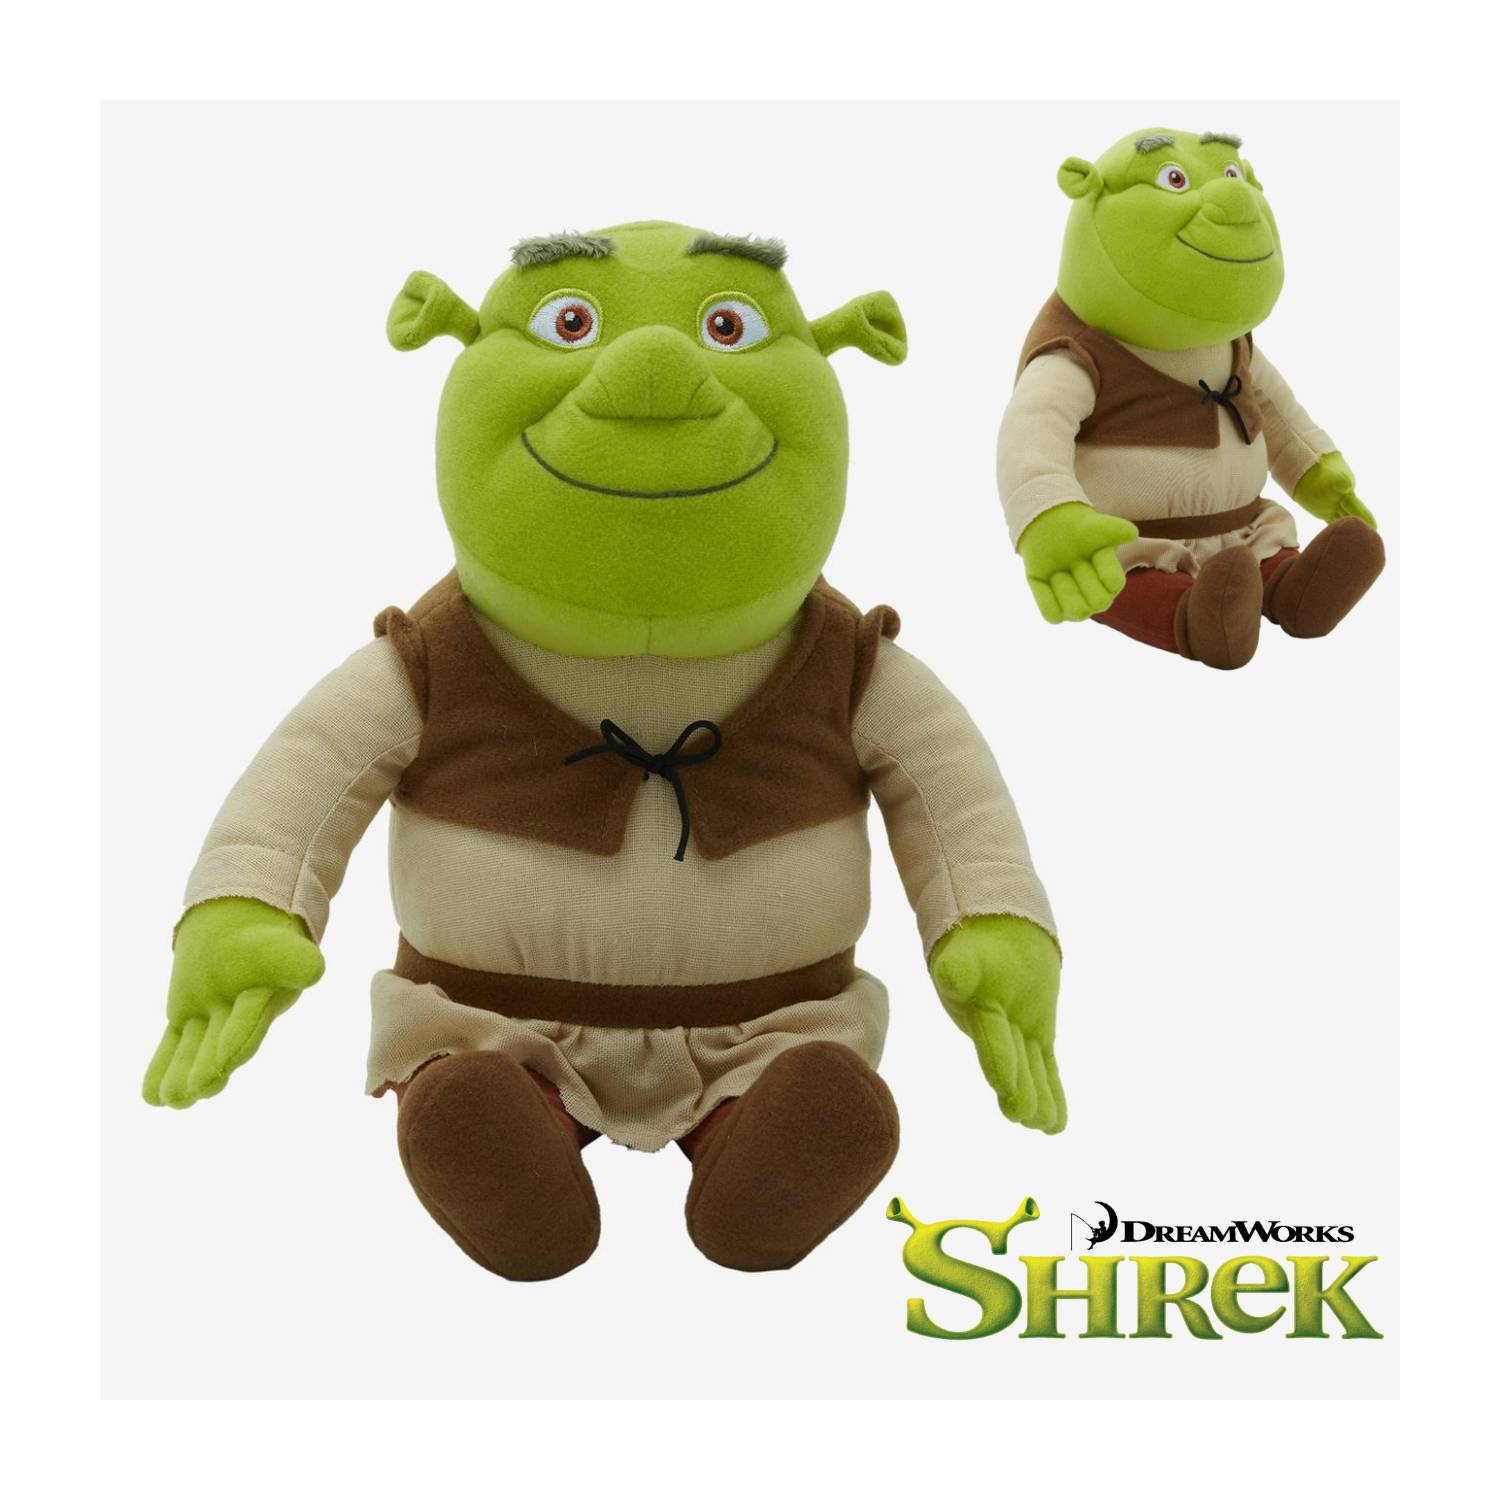 Peluche Shrek oficial Dreamworks - Shrek Dreamworks